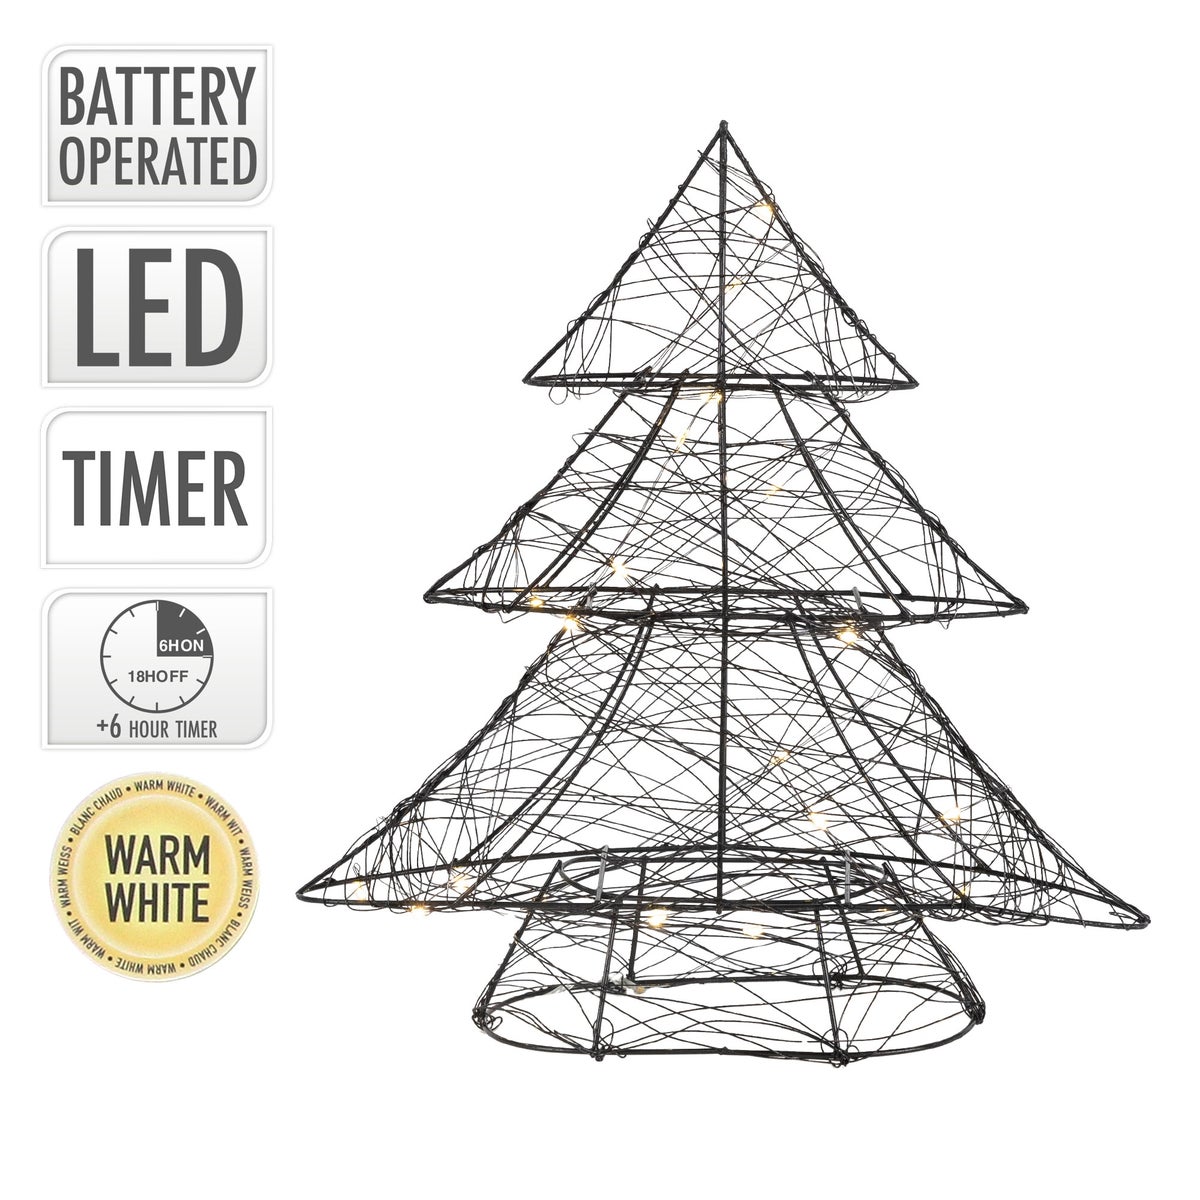 ECD Germany LED Deko Baum Weihnachten mit 20 warmweißen LEDs, 30 cm hoch, Metall, Schwarz, Weihnachtsbaum mit Beleuchtung & Timer, Innen, batteriebetrieben, Lichterbaum Tanne stehend Weihnachtsdeko